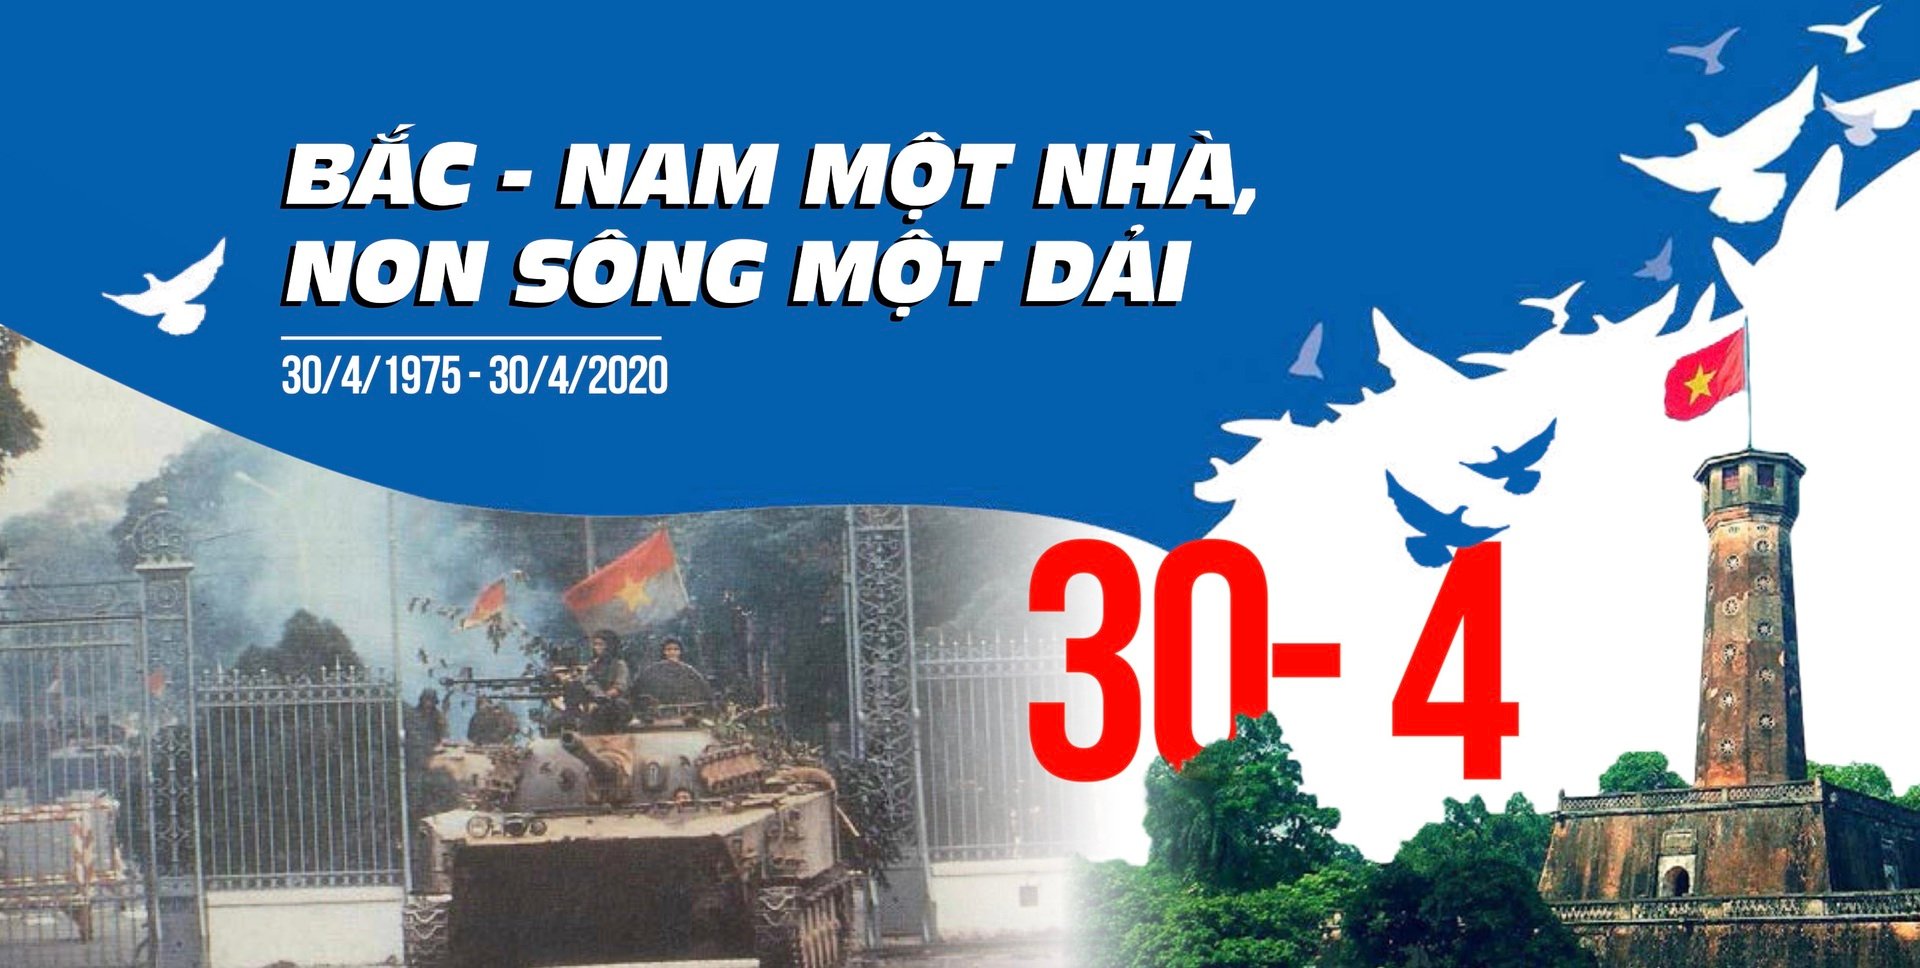 Những người sống trong không khí ngày 30/4 vẫn luôn xúc động khi nhắc tới thời khắc lịch sử của Ngày Giải phóng miền Nam, thống nhất đất nước (Ảnh: Báo Lao động)